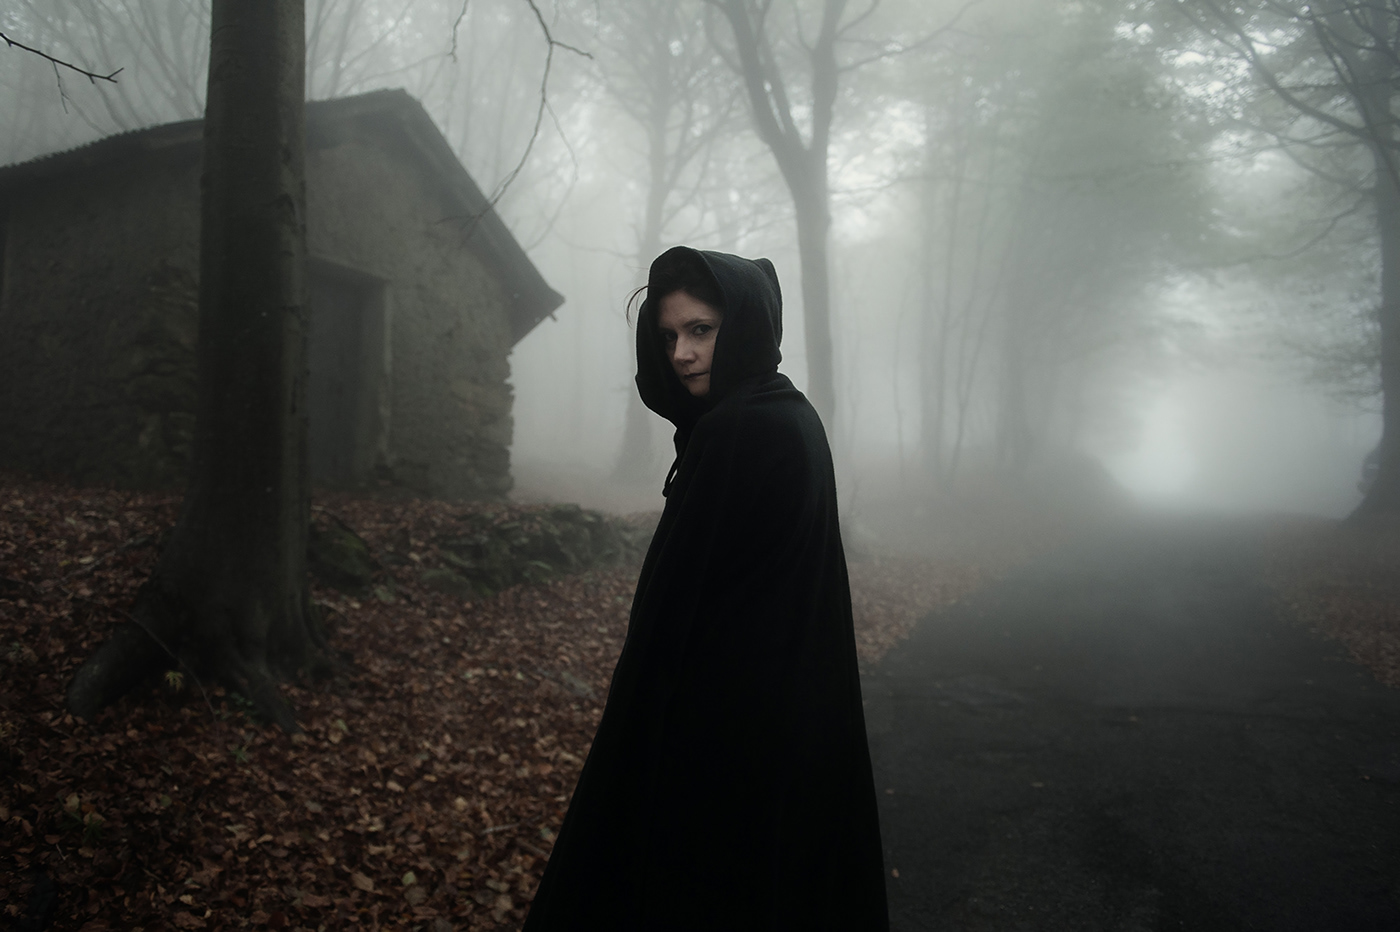 autumn wood fog dark darkness fear gothic black